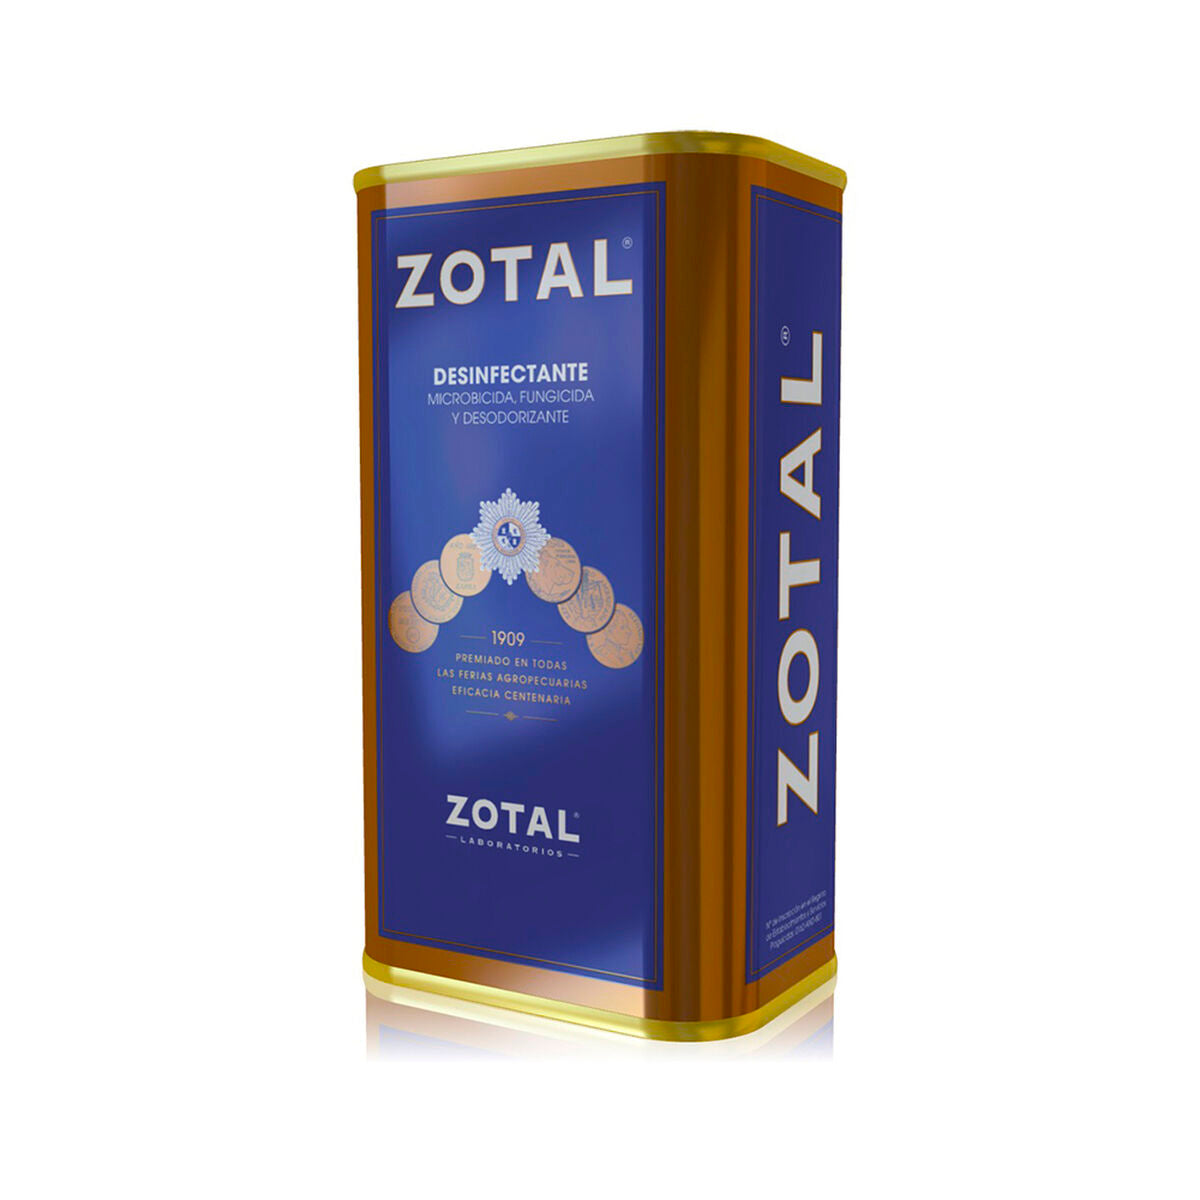 Αποπροσδιλαής zotal μυκητοκτόνο αποσμητικό (415 mL)